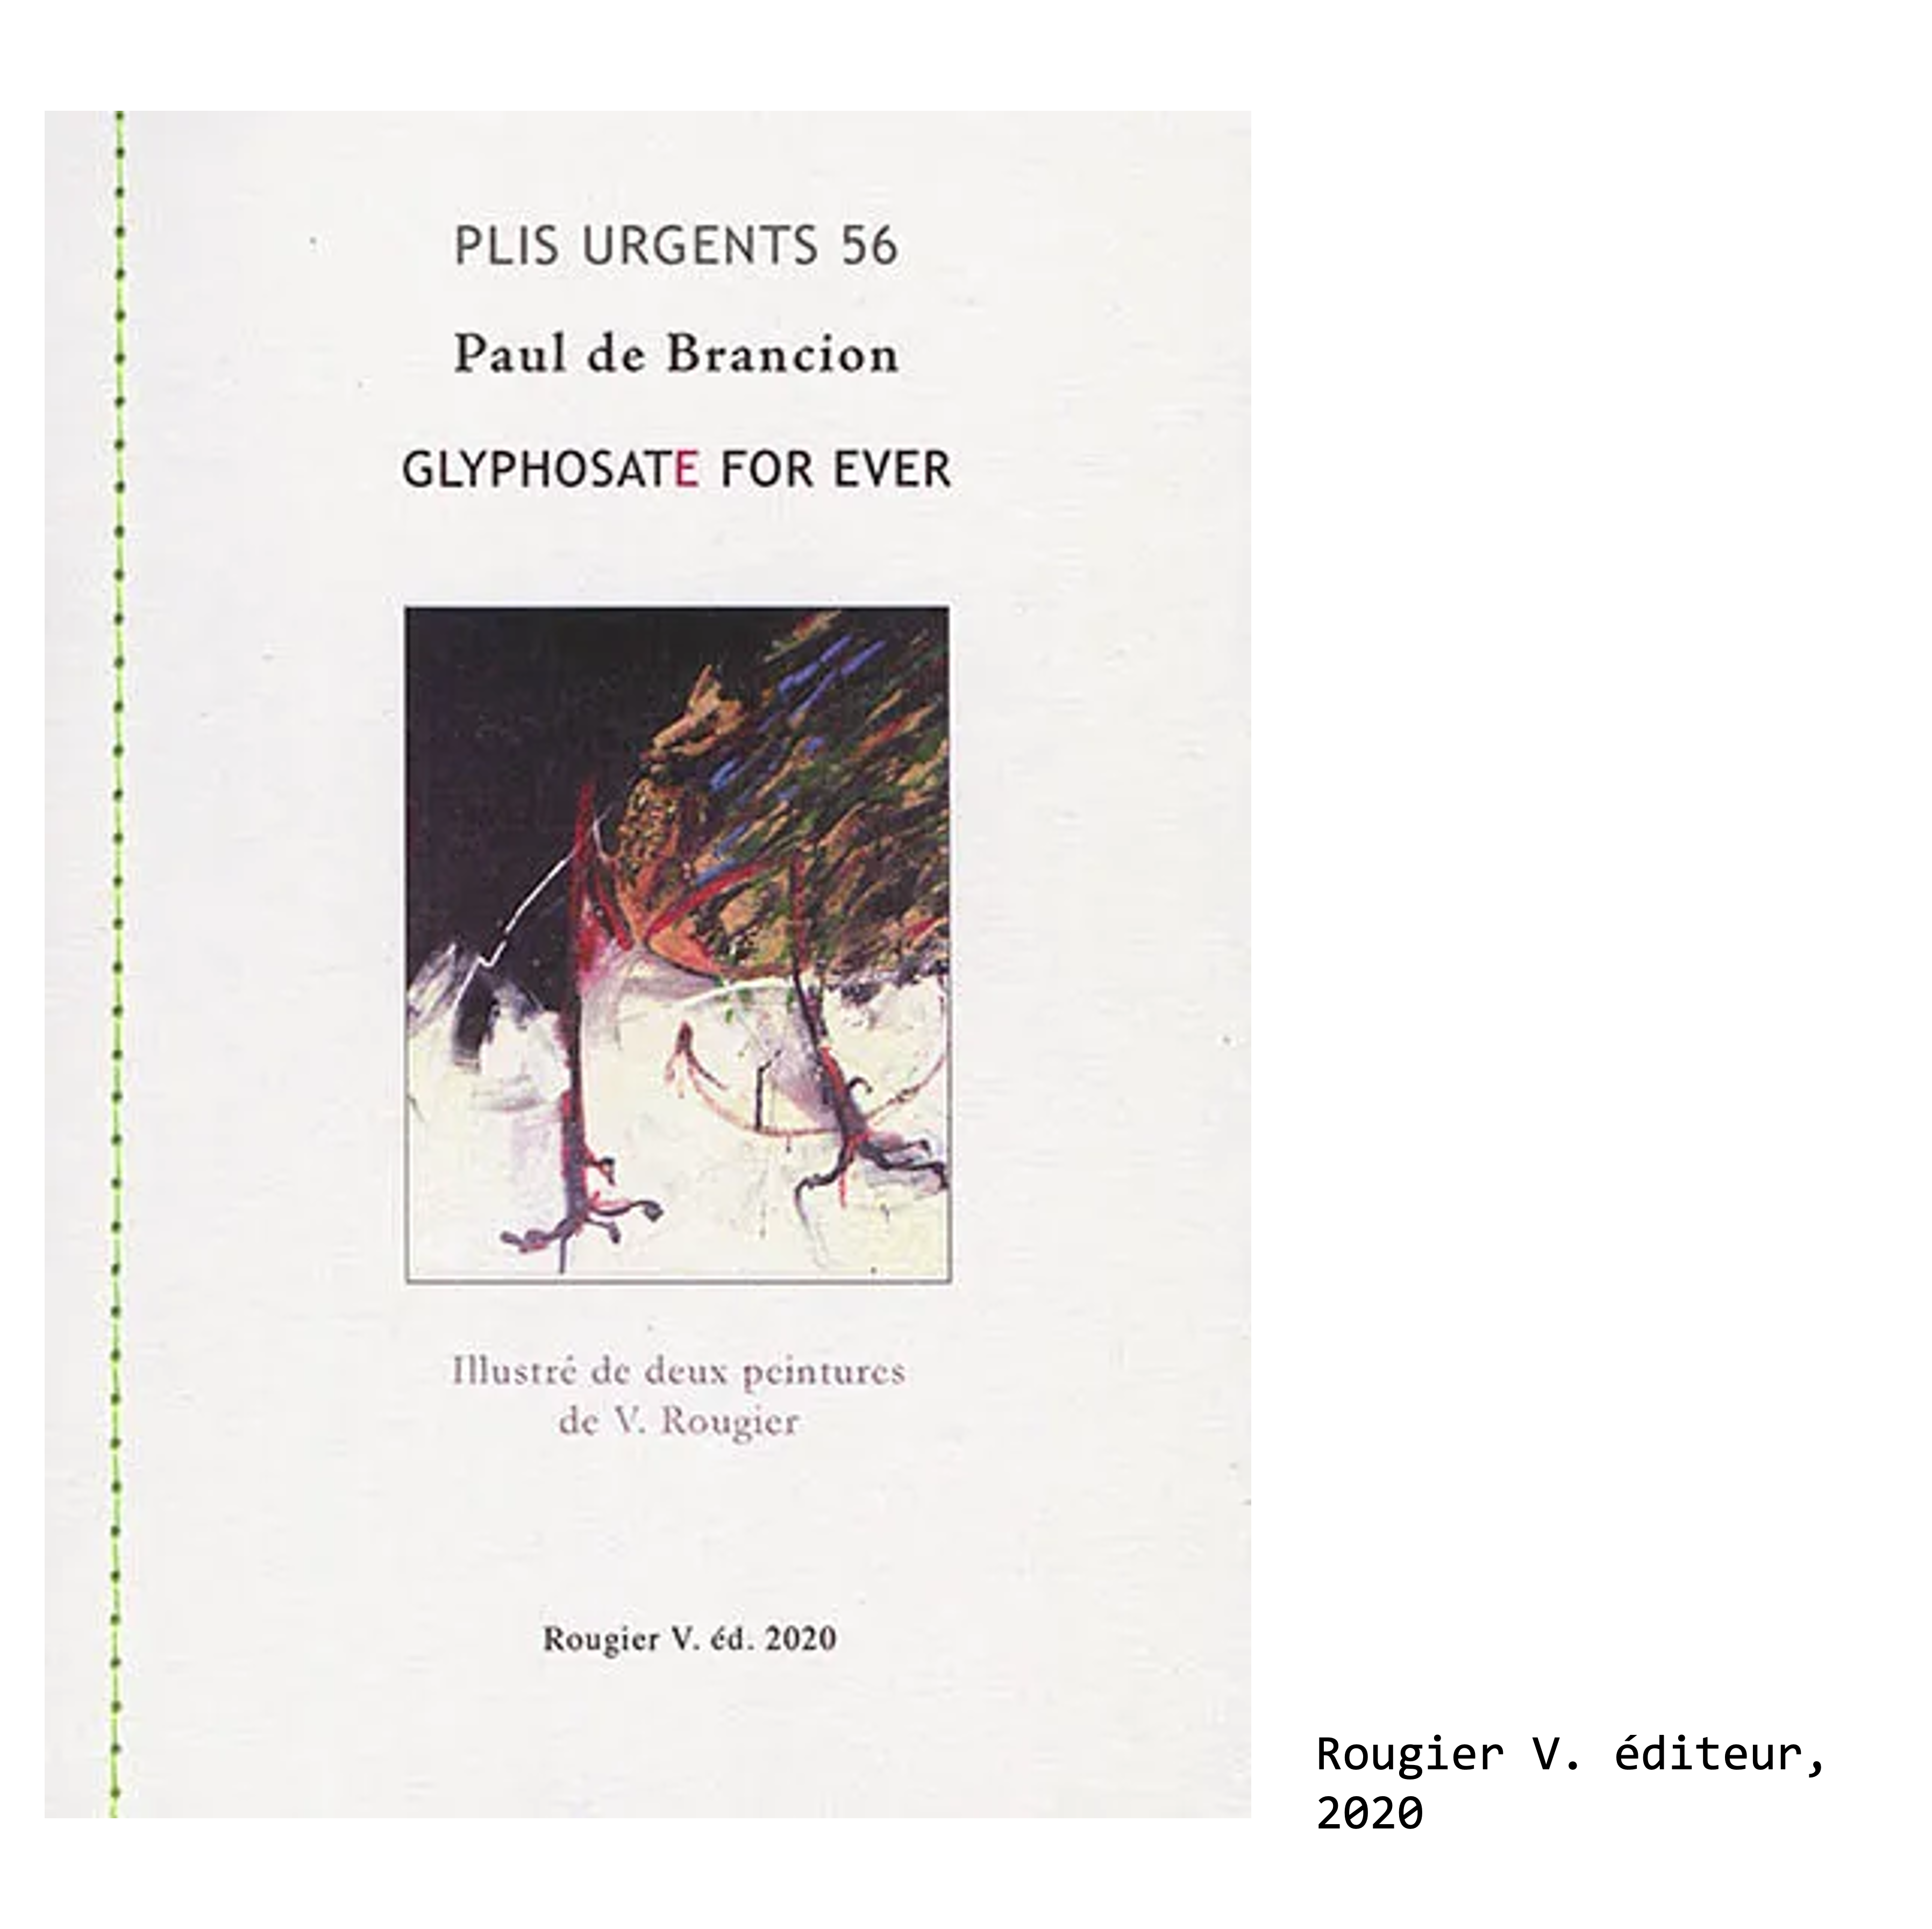 Couverture du livre de Paul de Brancion, écrivain et poète : Glyphosate for ever : à scander jusqu'à l'épuisement, illustré de deux peintures de V. Rougier, Rougier V. éditeur, 2020